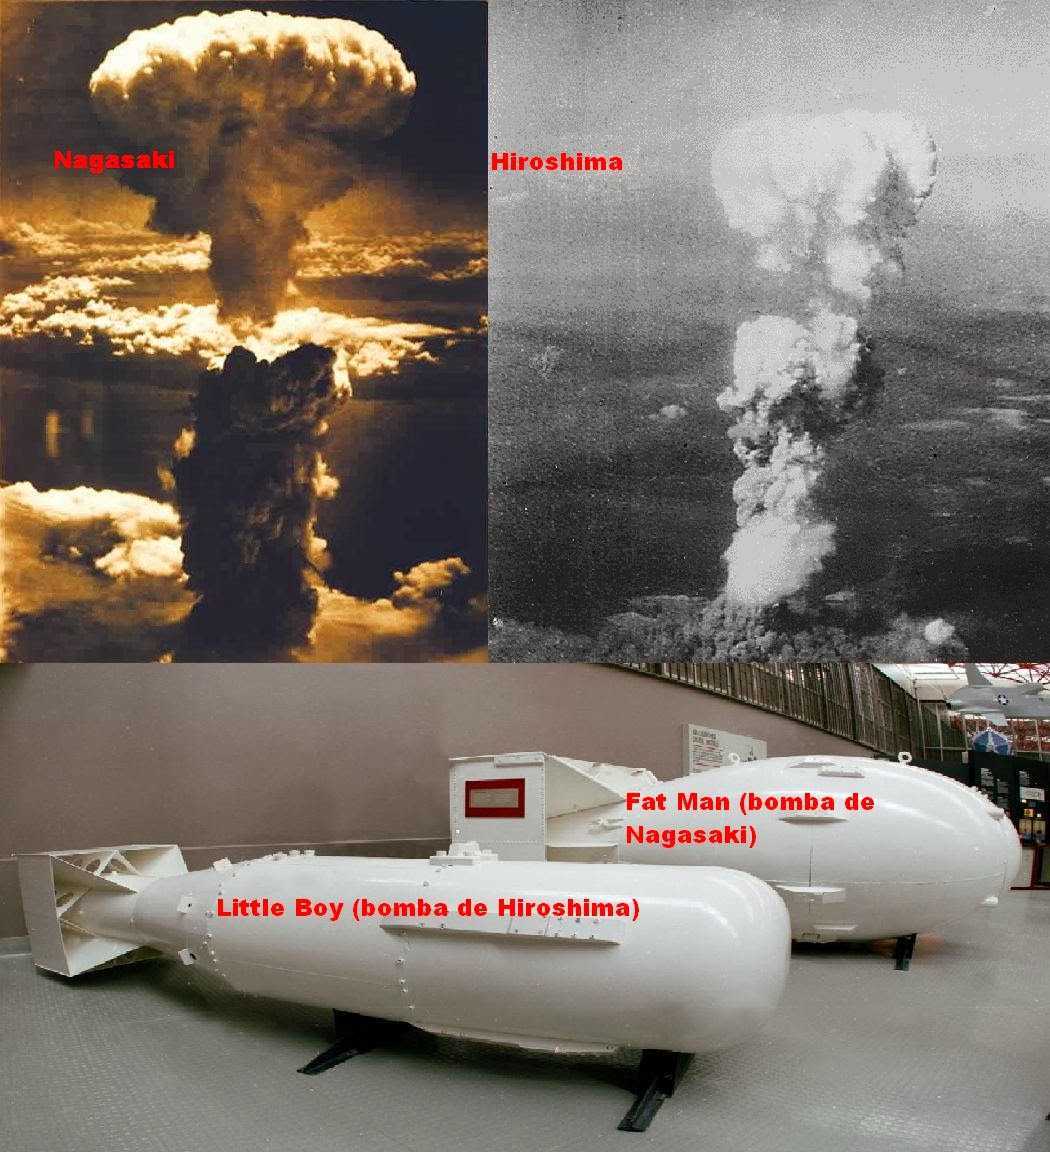 Сколько людей погибло хиросима нагасаки ядерный взрыв. Хиросима и Нагасаки атомная бомба. Нагасаки и Хиросима США атамнойьомба. Ядерное оружие США Хиросима Нагасаки. Япония 1945 Хиросима и Нагасаки.